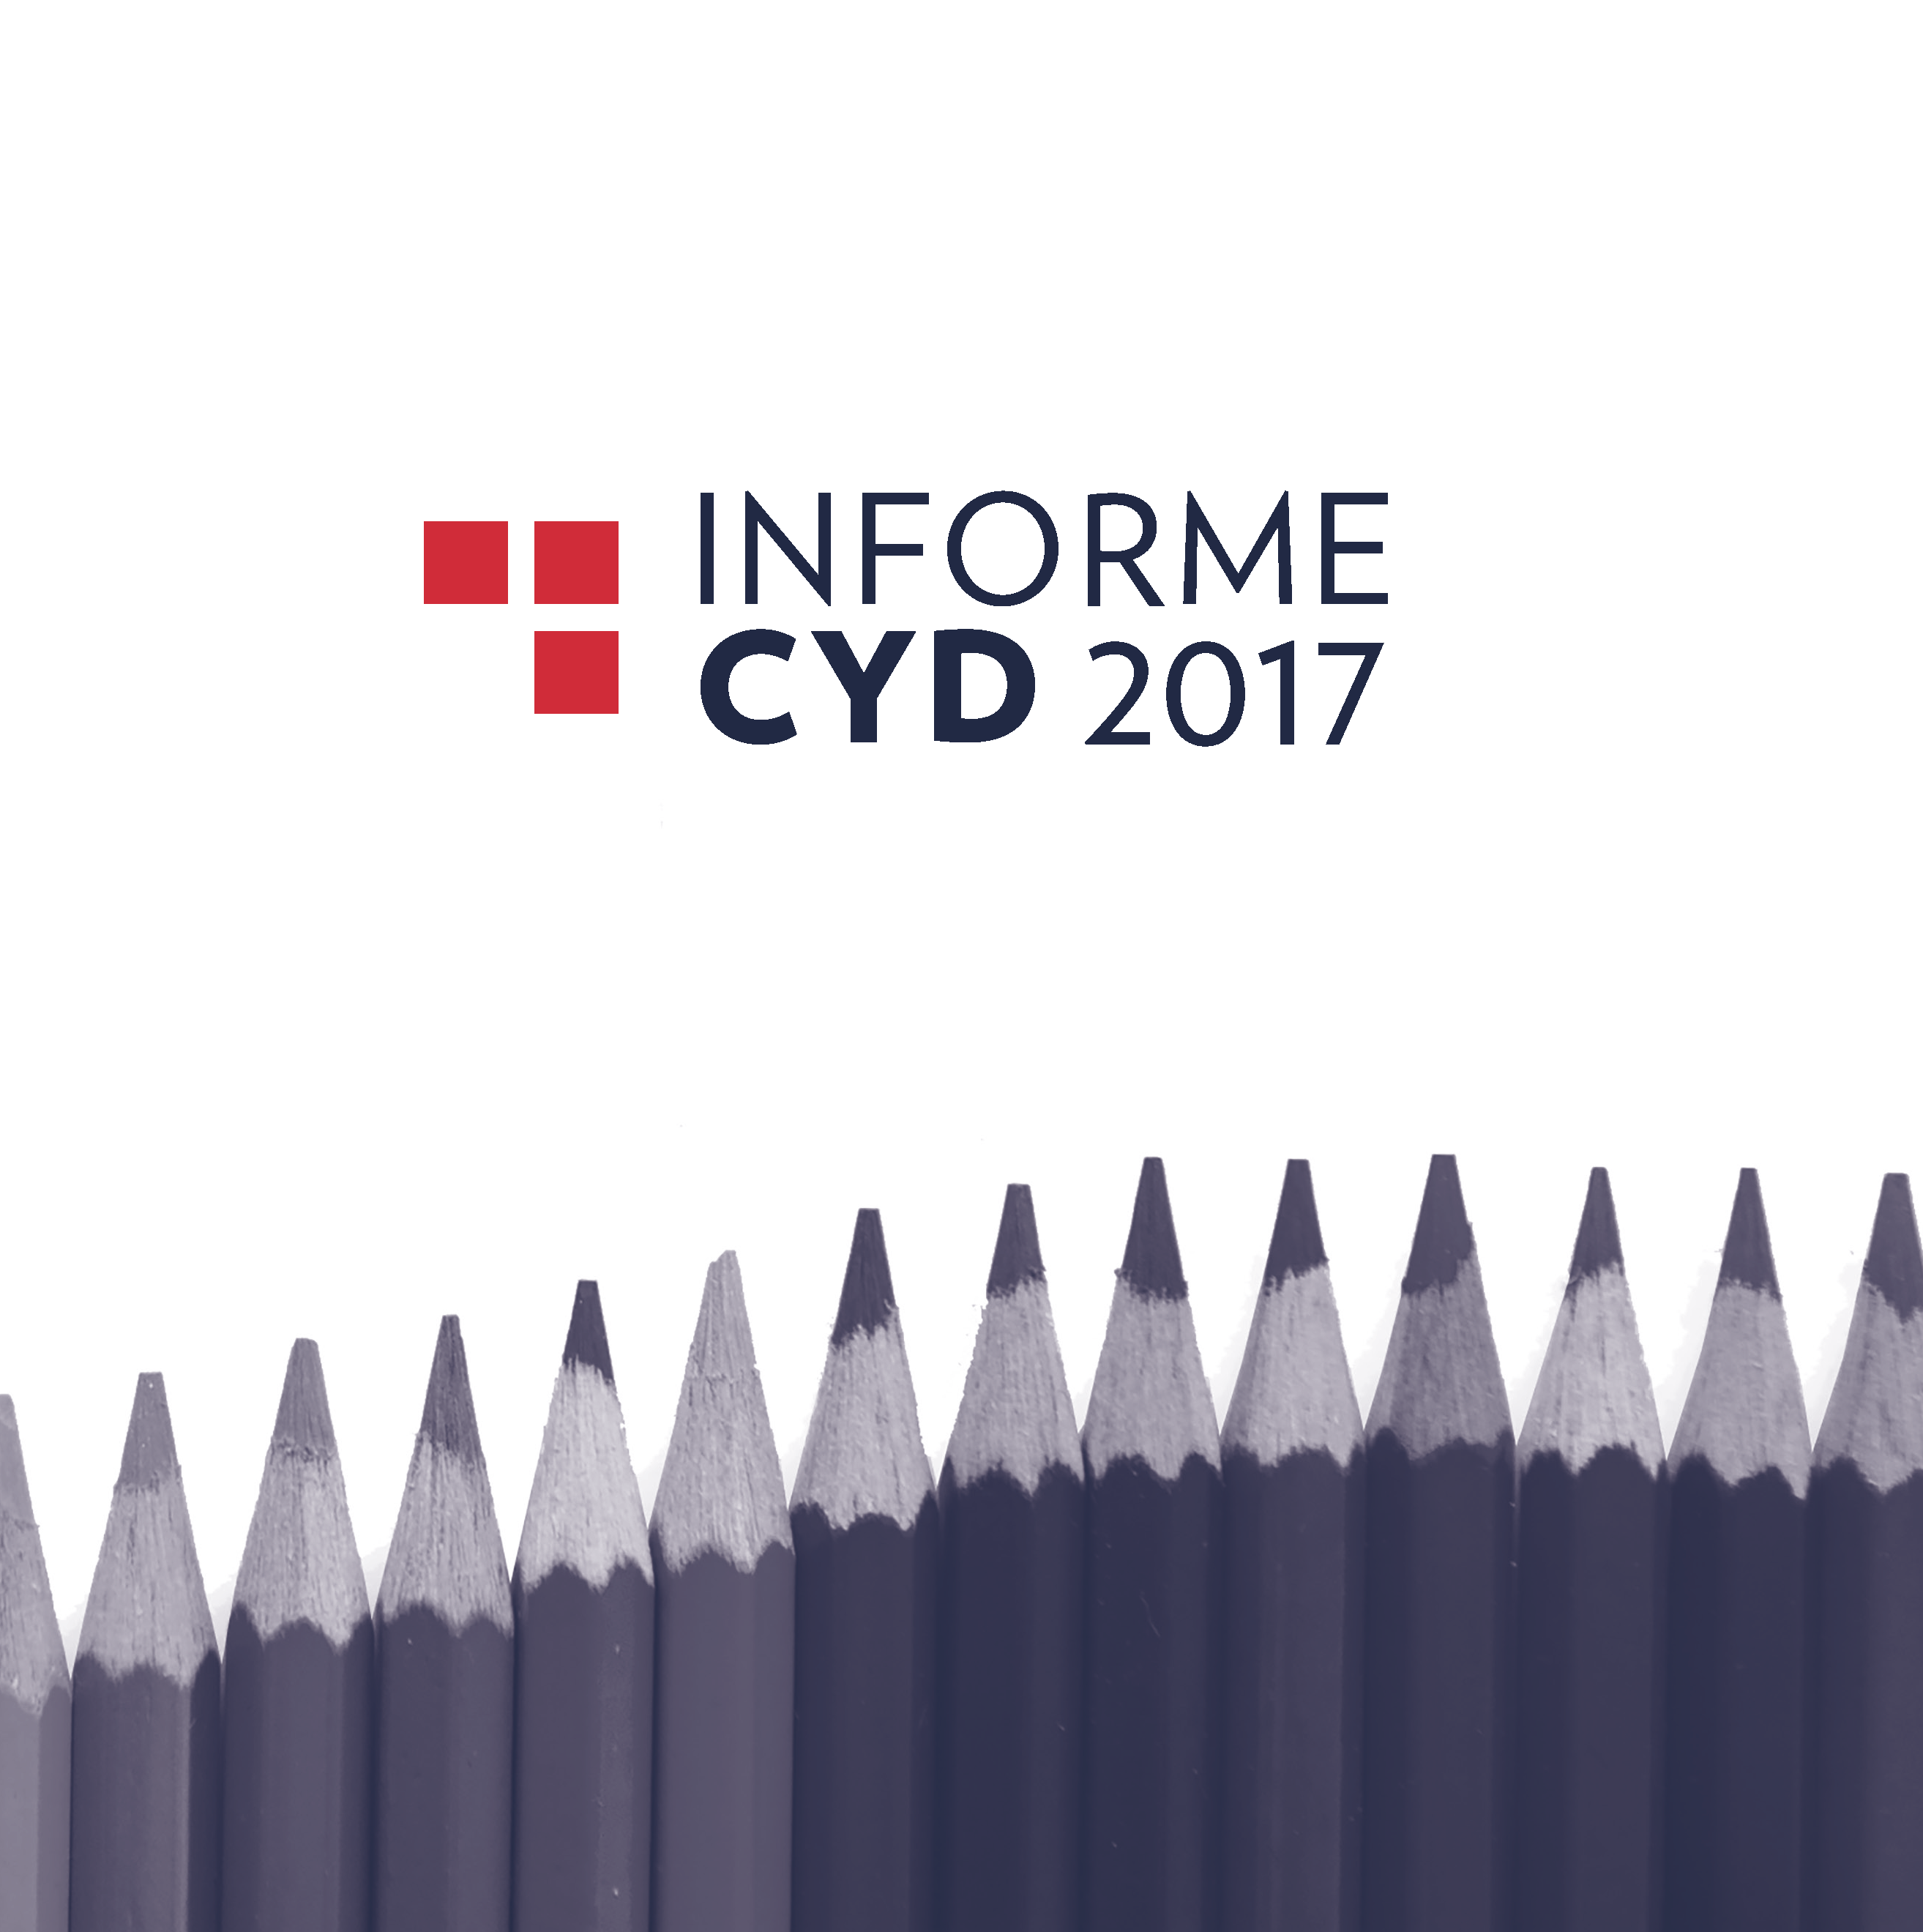 Informe CYD 2017